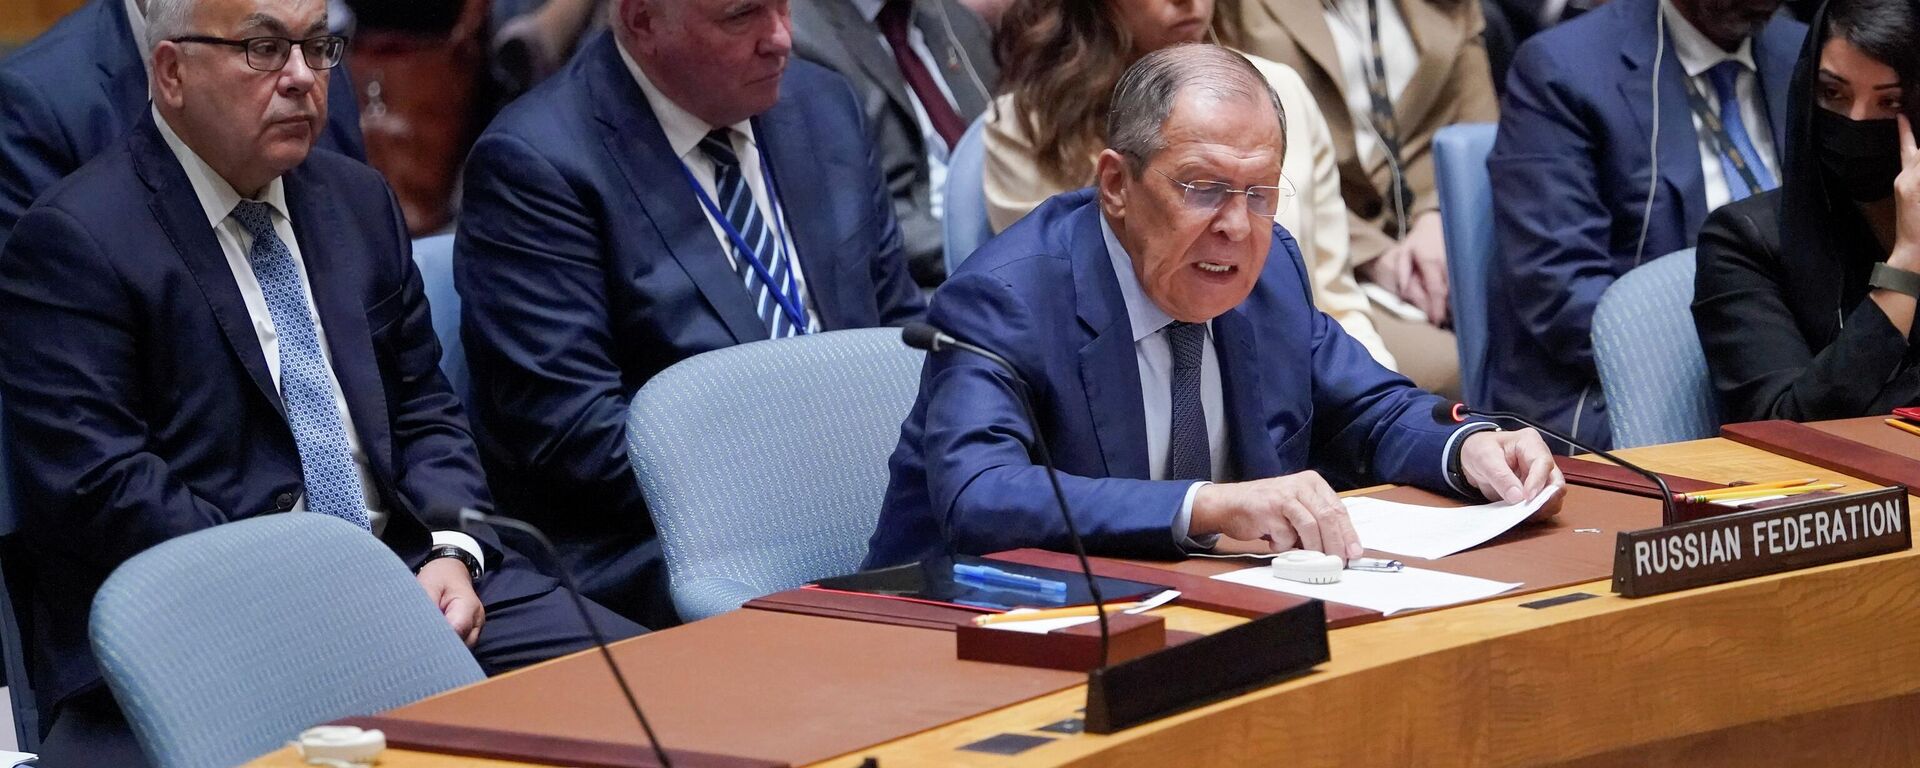 O ministro das Relações Exteriores da Rússia, Sergei Lavrov, fala durante uma reunião de alto nível do Conselho de Segurança sobre a situação na Ucrânia, 22 de setembro de 2022 - Sputnik Brasil, 1920, 22.09.2022